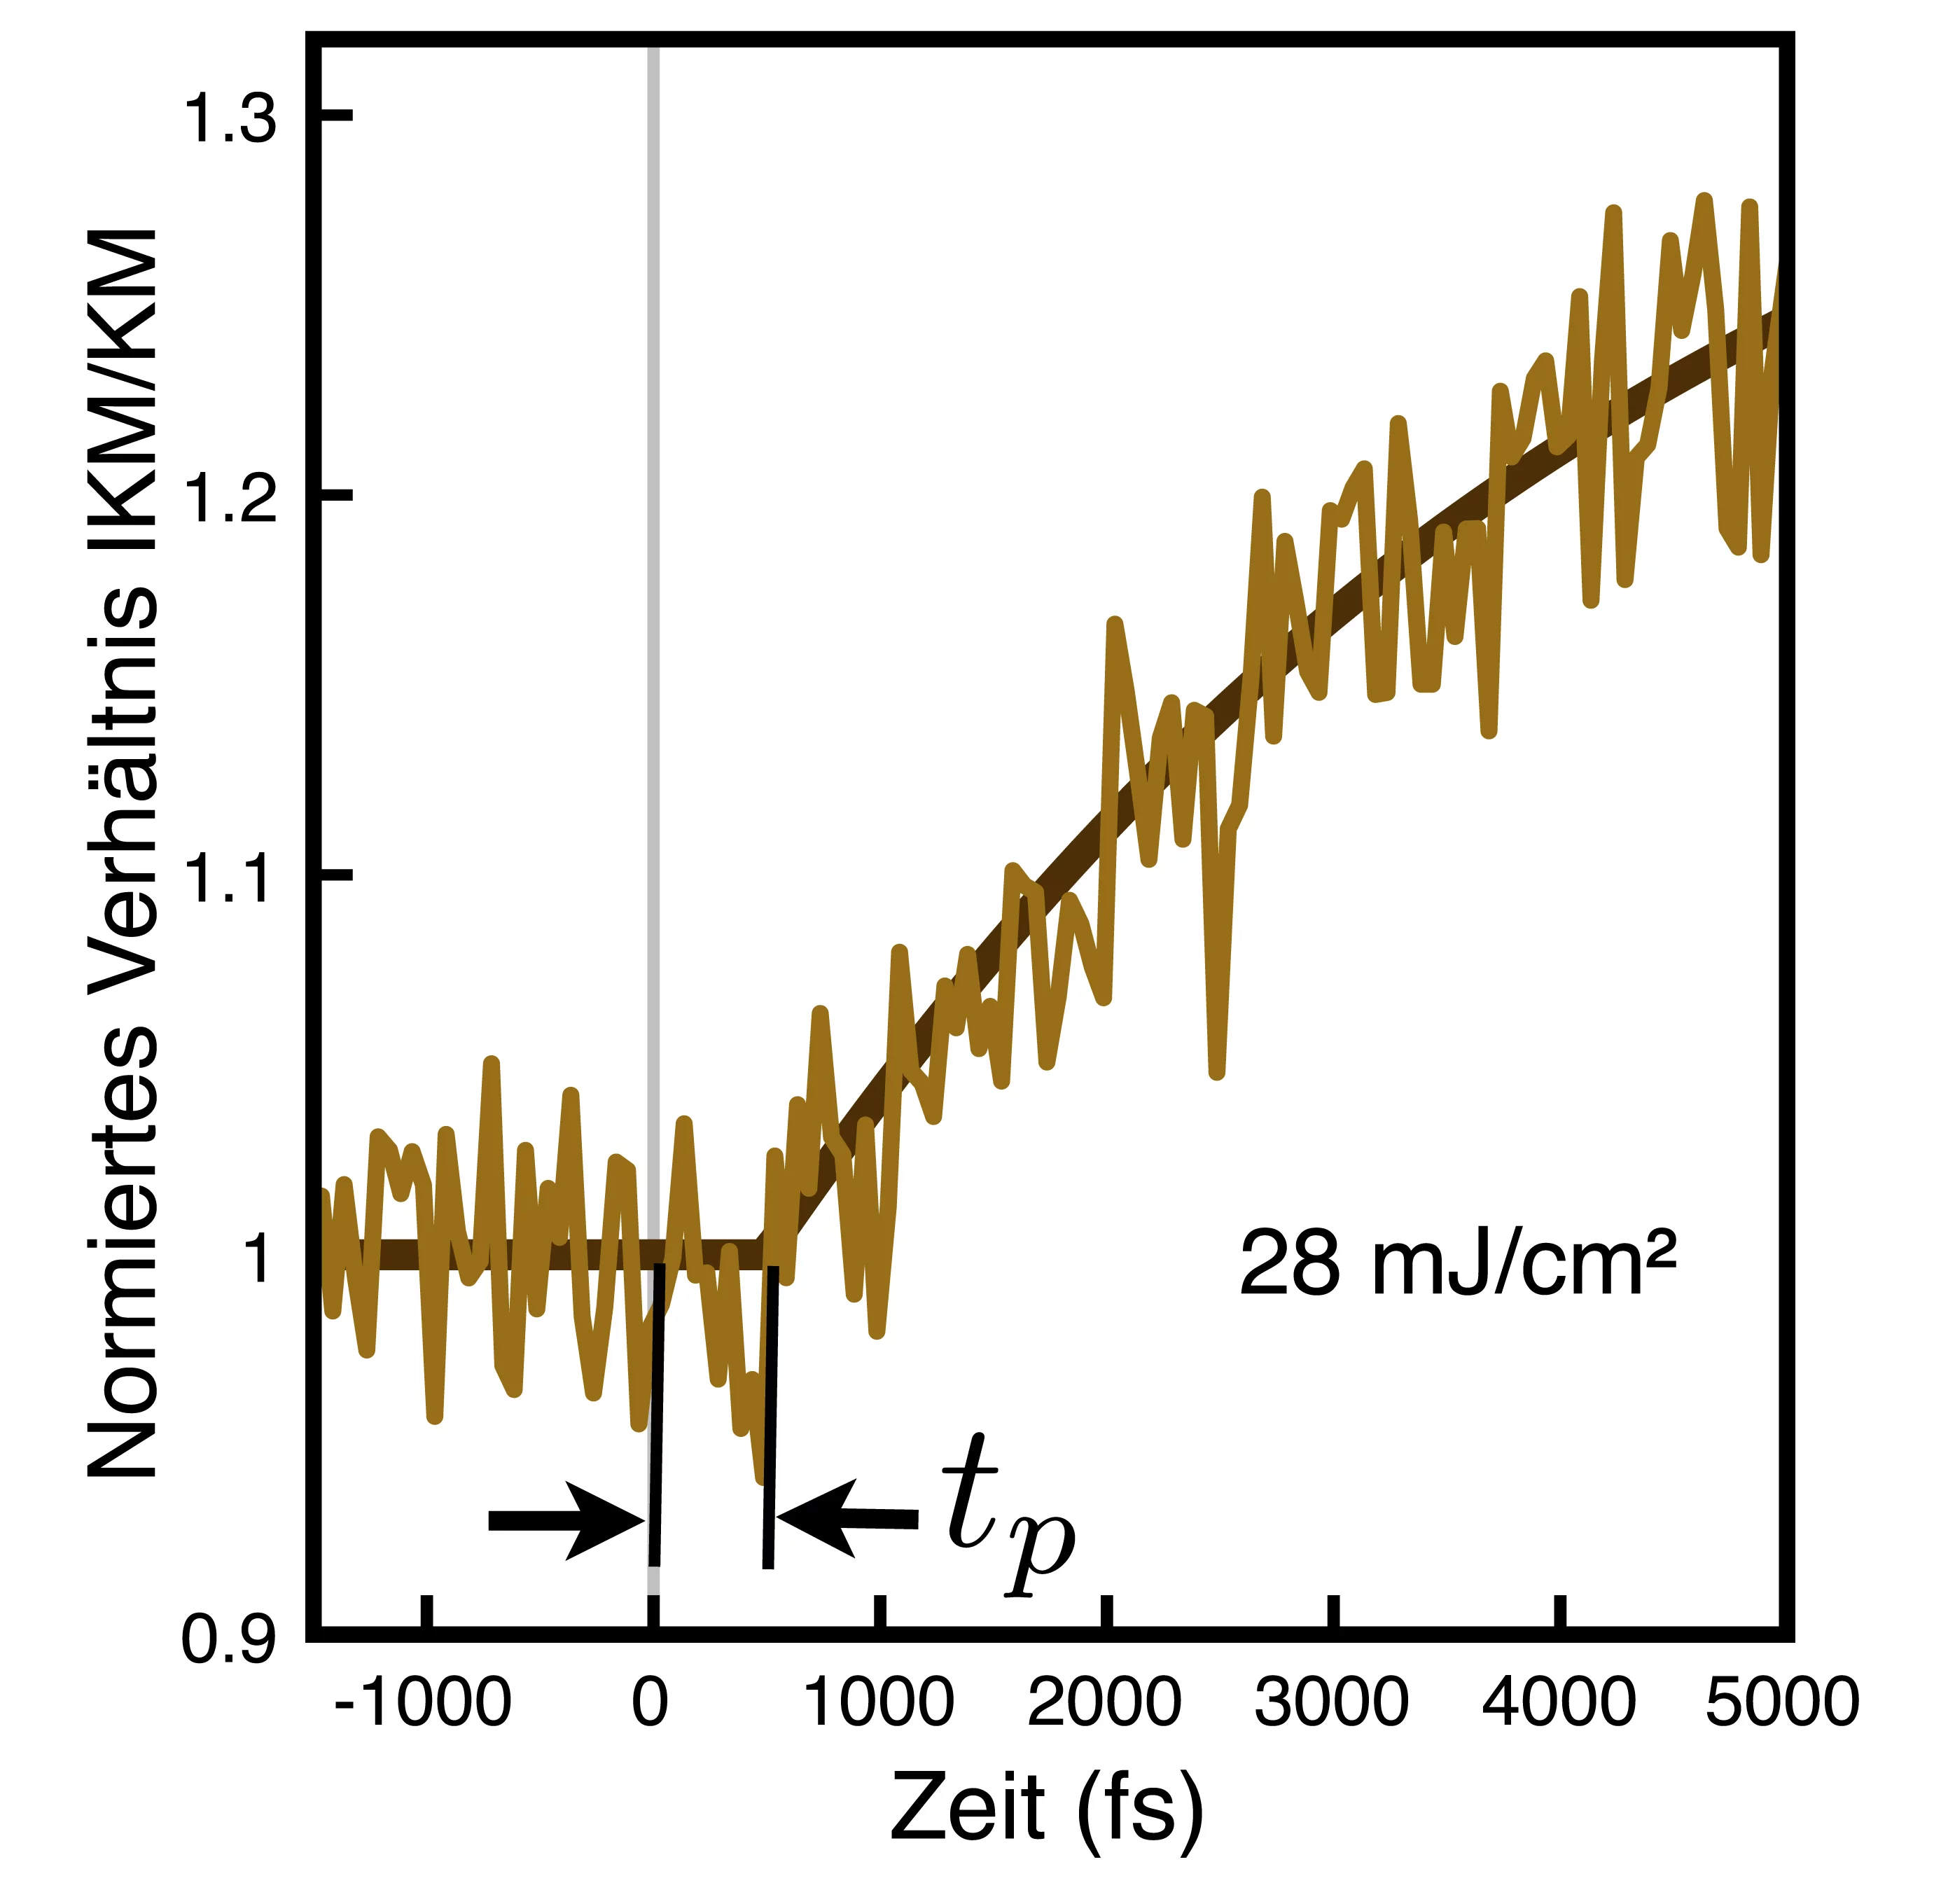 Veränderung der magnetischen Strukturen von CuO im Zeitverlauf – beim Wert 1 ist deutlich mehr von der Tieftemperaturstruktur (KM) vorhanden, für höhere Werte gibt es einen immer grösseren Anteil der zweiten Struktur (IKM). Die braune Kurve zeigt die tatsächlichen Messwerte, die schwarze den daraus abgeleiteten Verlauf. Bei der Zeit 0 erhitzt der Laserblitz die Probe; die neue Struktur tritt aber erst 400 Femtosekunden später erstmals auf (tp). S. L. Johnson et al. Phys. Rev. Lett. 108, 037203 (2012) © 201…